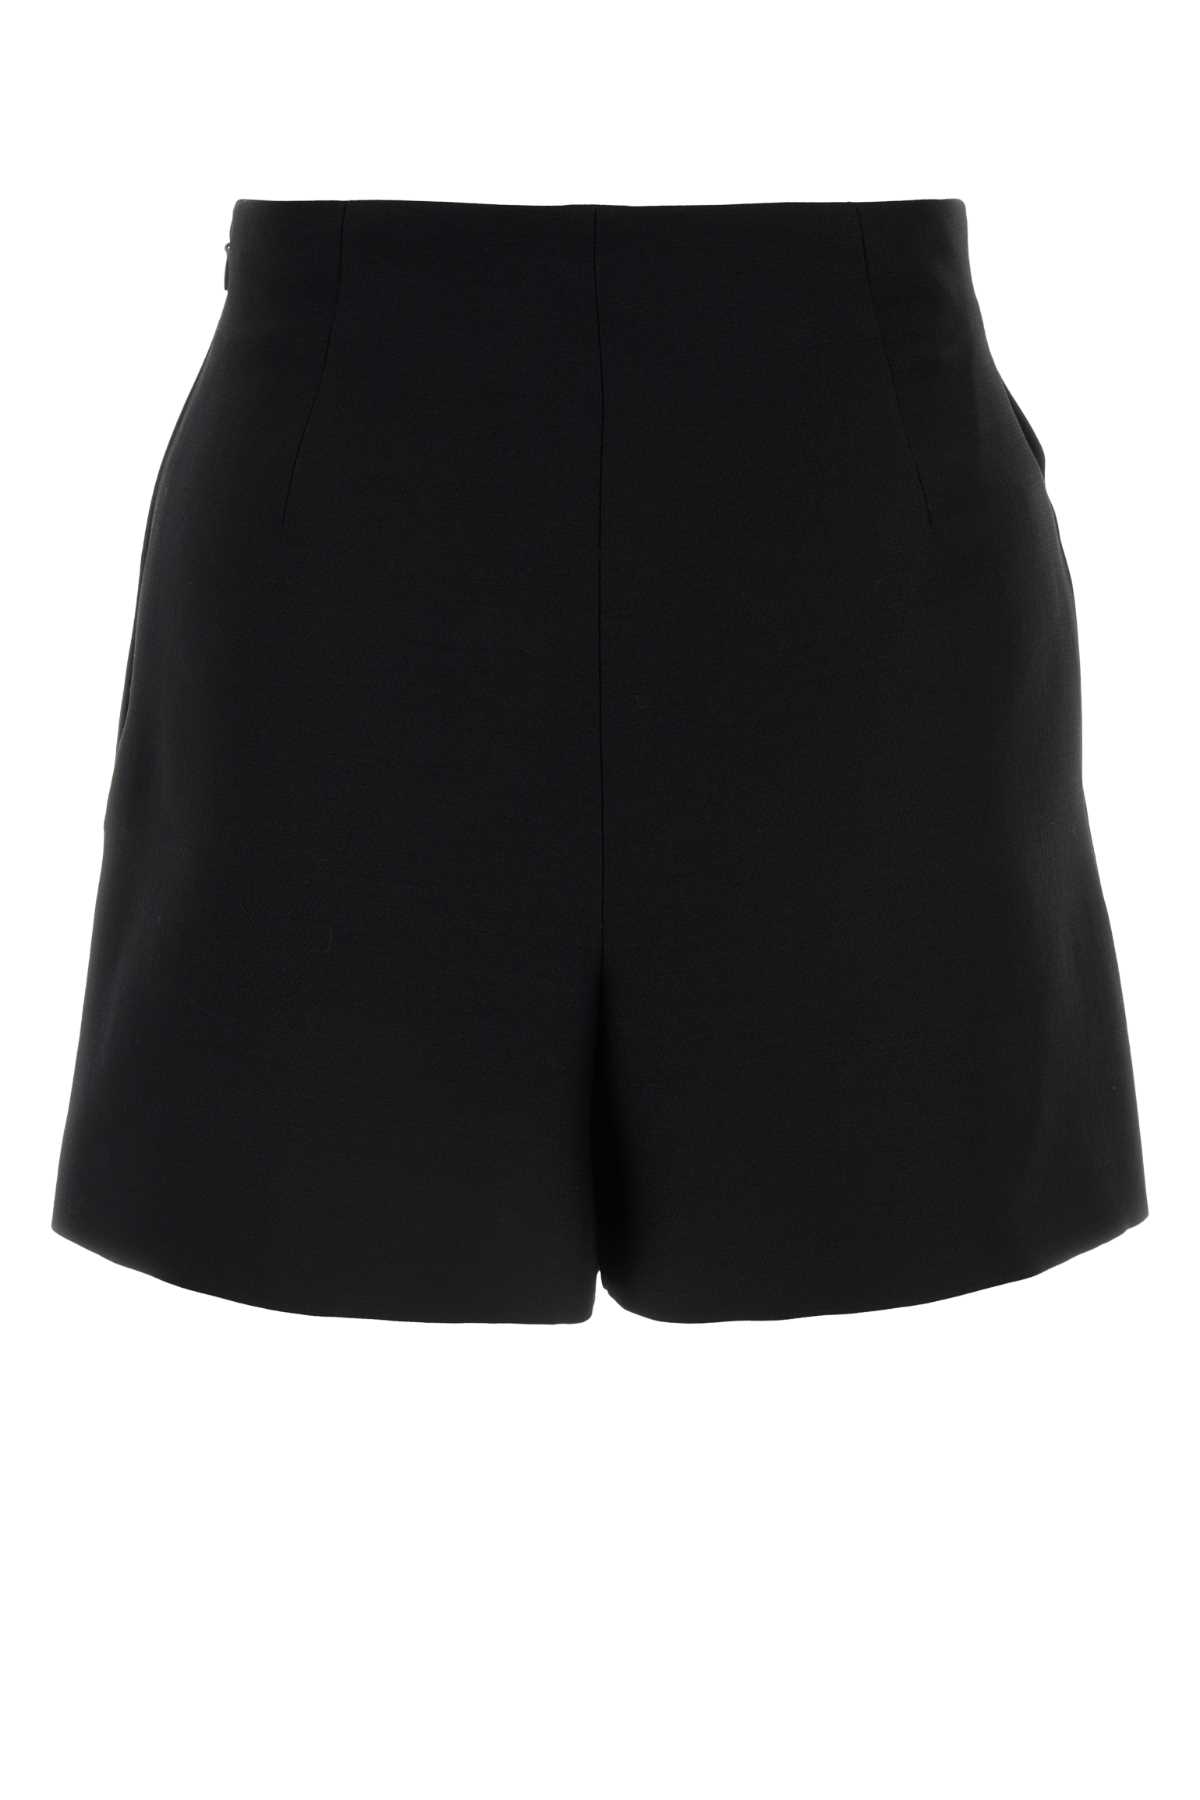 Valentino Black Crepe Couture Shorts In Nero